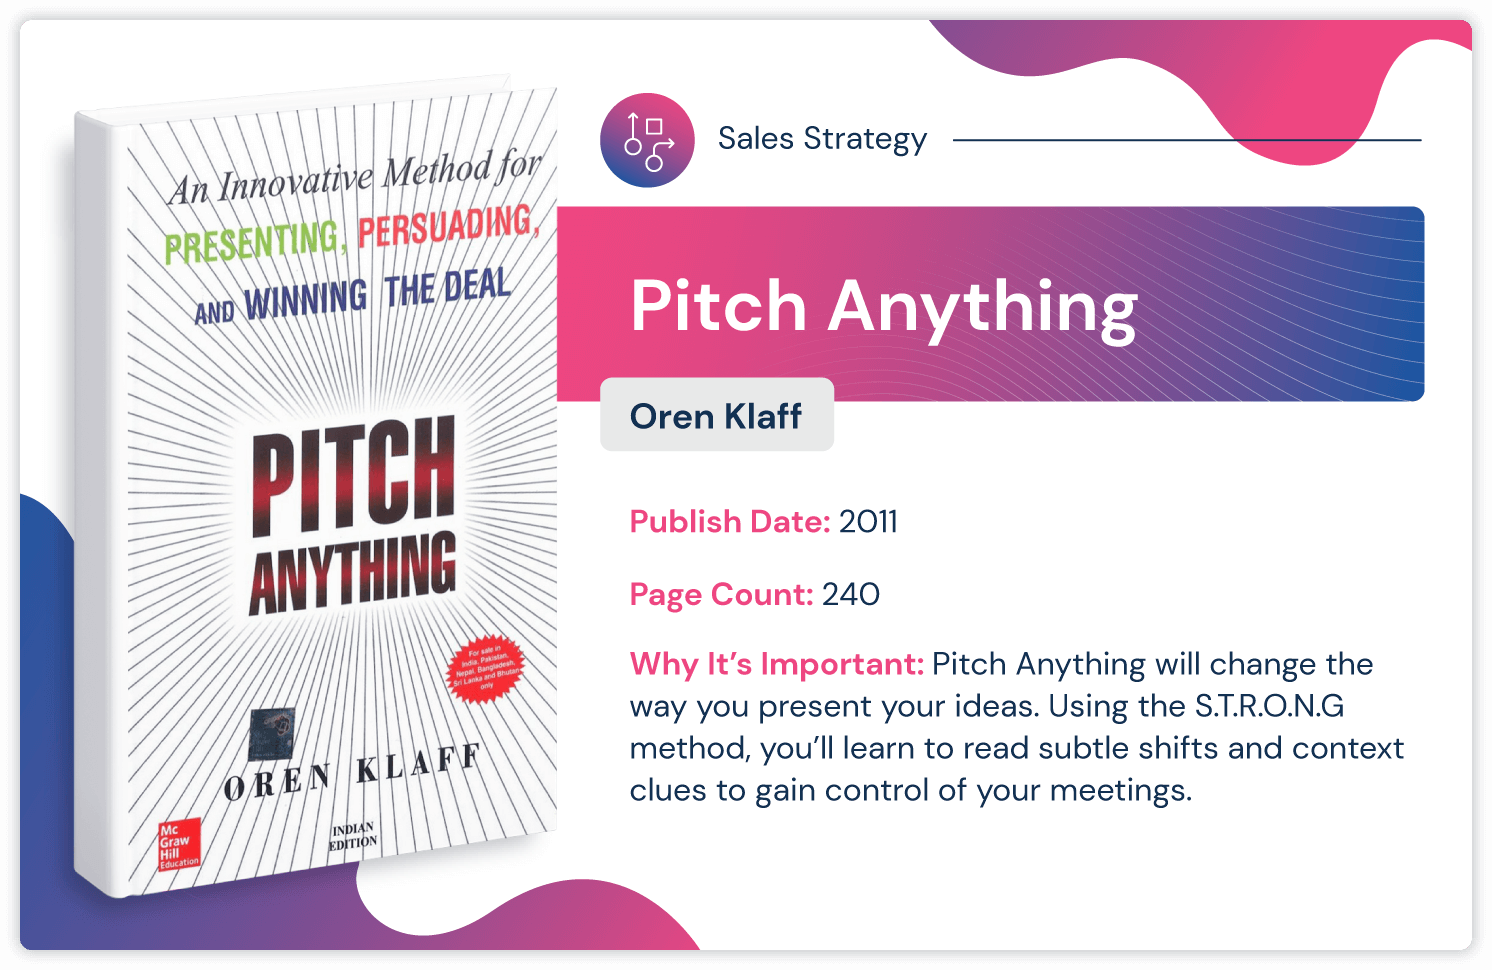 Verkaufsstrategiebuch „Pitch Anything“ von Oren Klaff, erschienen 2011 und 240 Seiten lang.